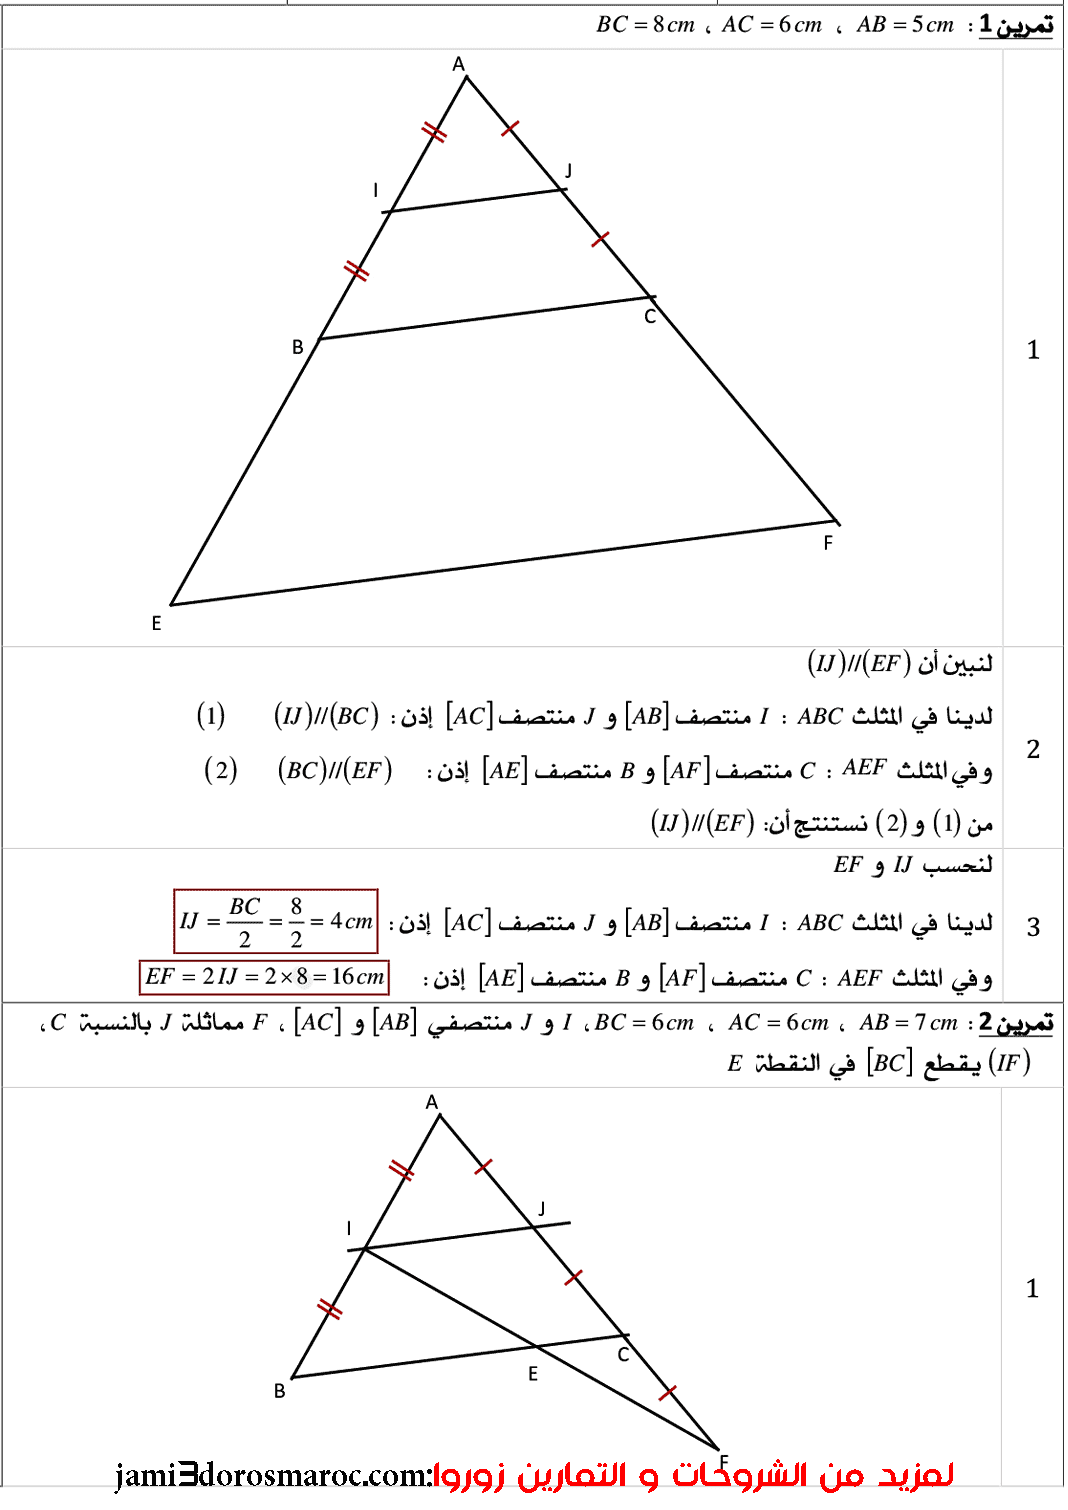 تمارين و حلول في درس التوازي ومنتصفات أضلاع مثلث الثانية إعدادي